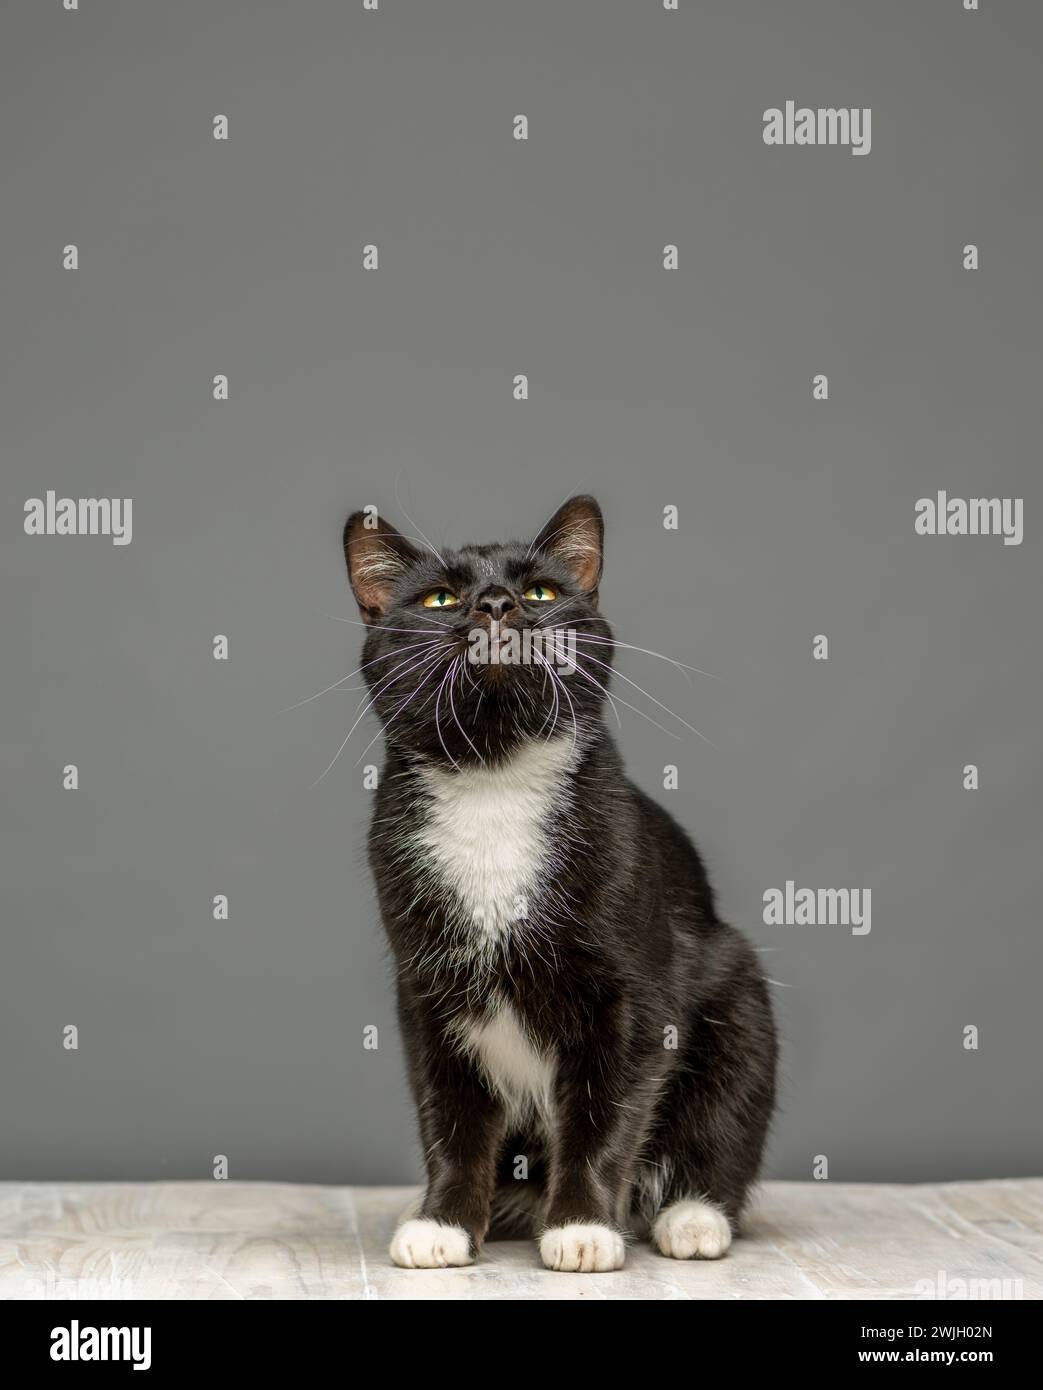 Studio-Aufnahme einer schwarz-weißen Katze, die nach oben blickt und auf einem weiß getünchten Tisch sitzt. Vor grauem Hintergrund. Stockfoto